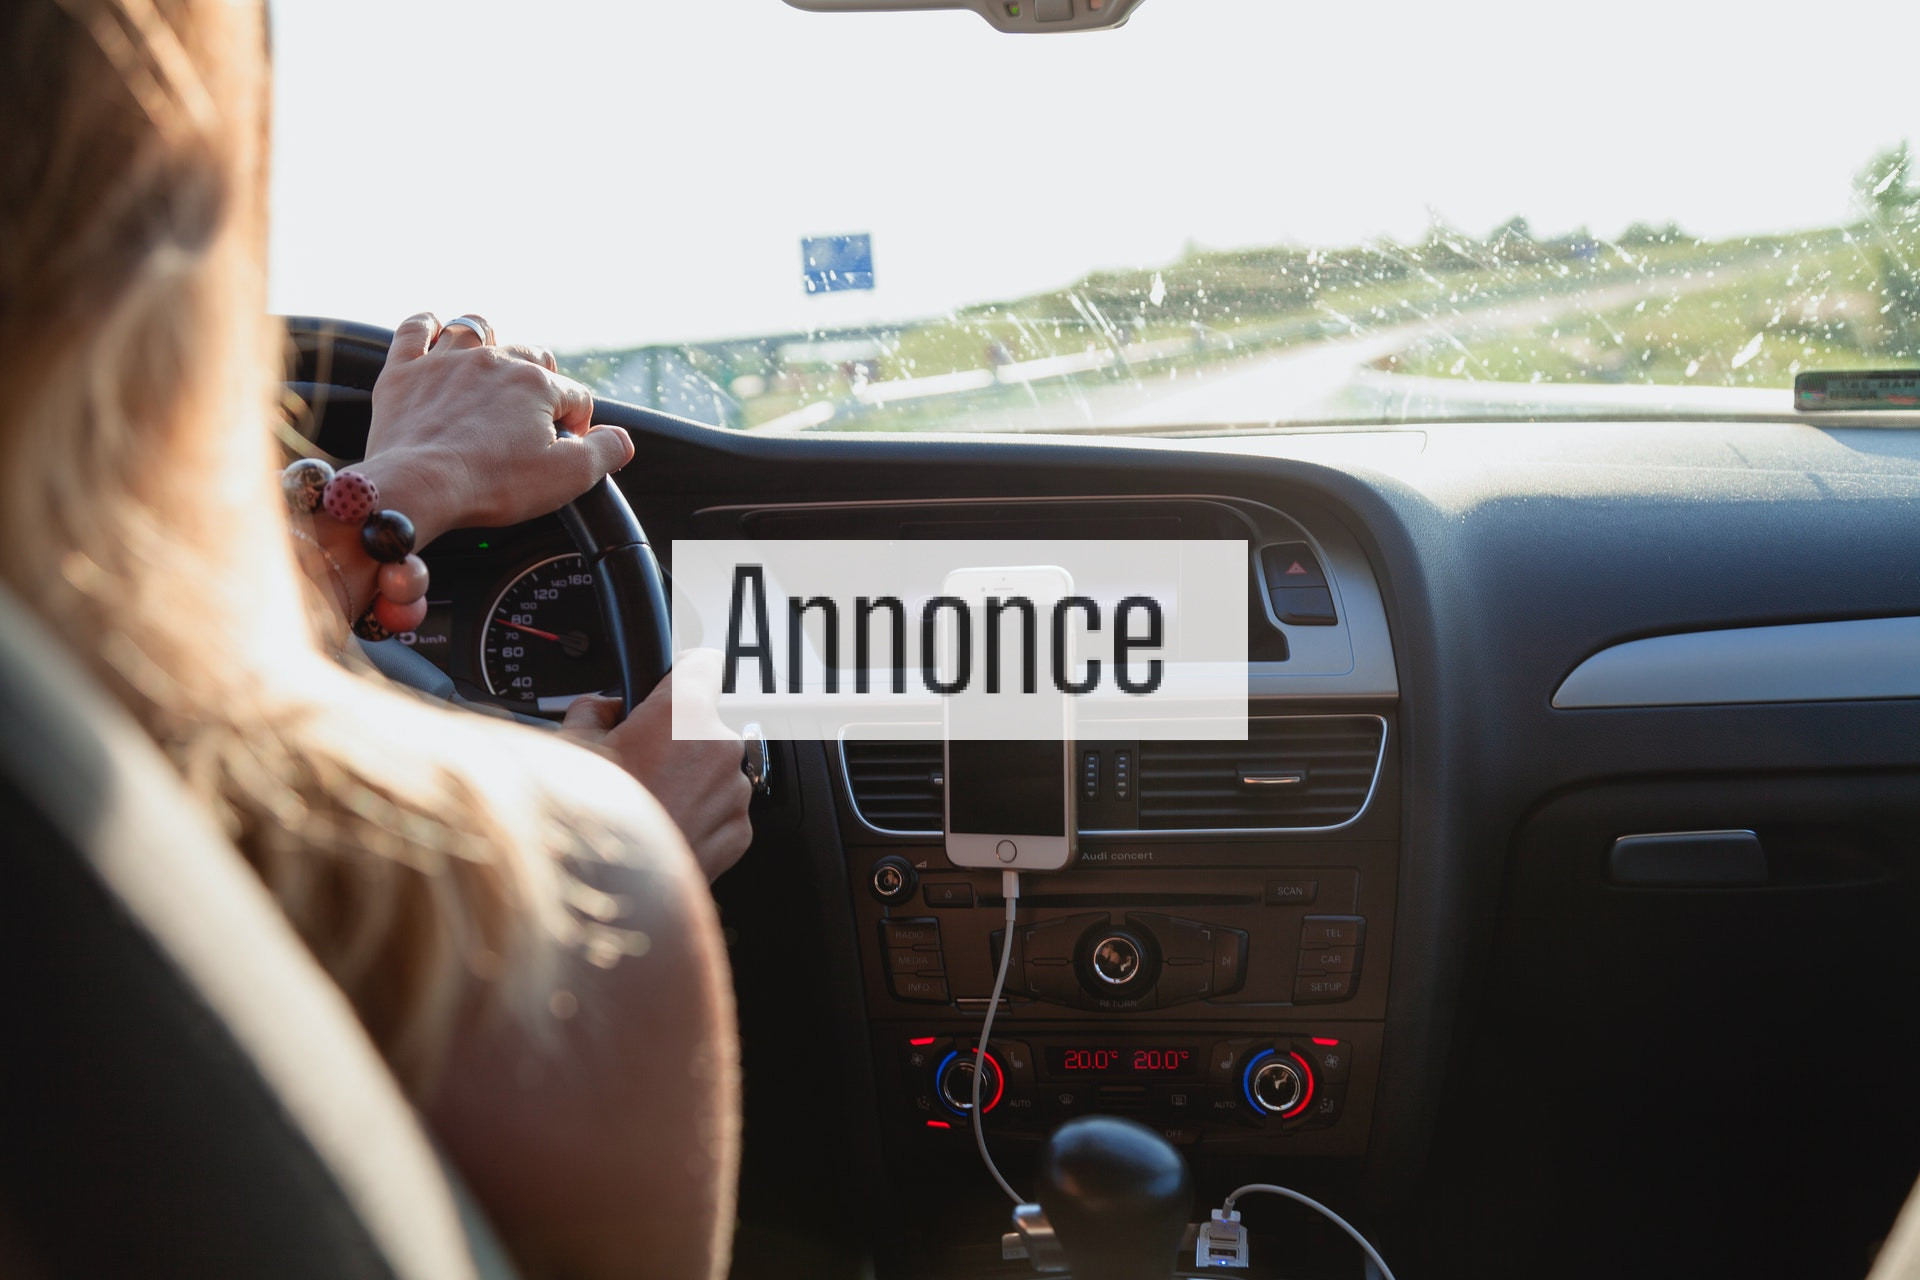 Brug lovligt din mobiltelefon til både opkald og GPS i bilen